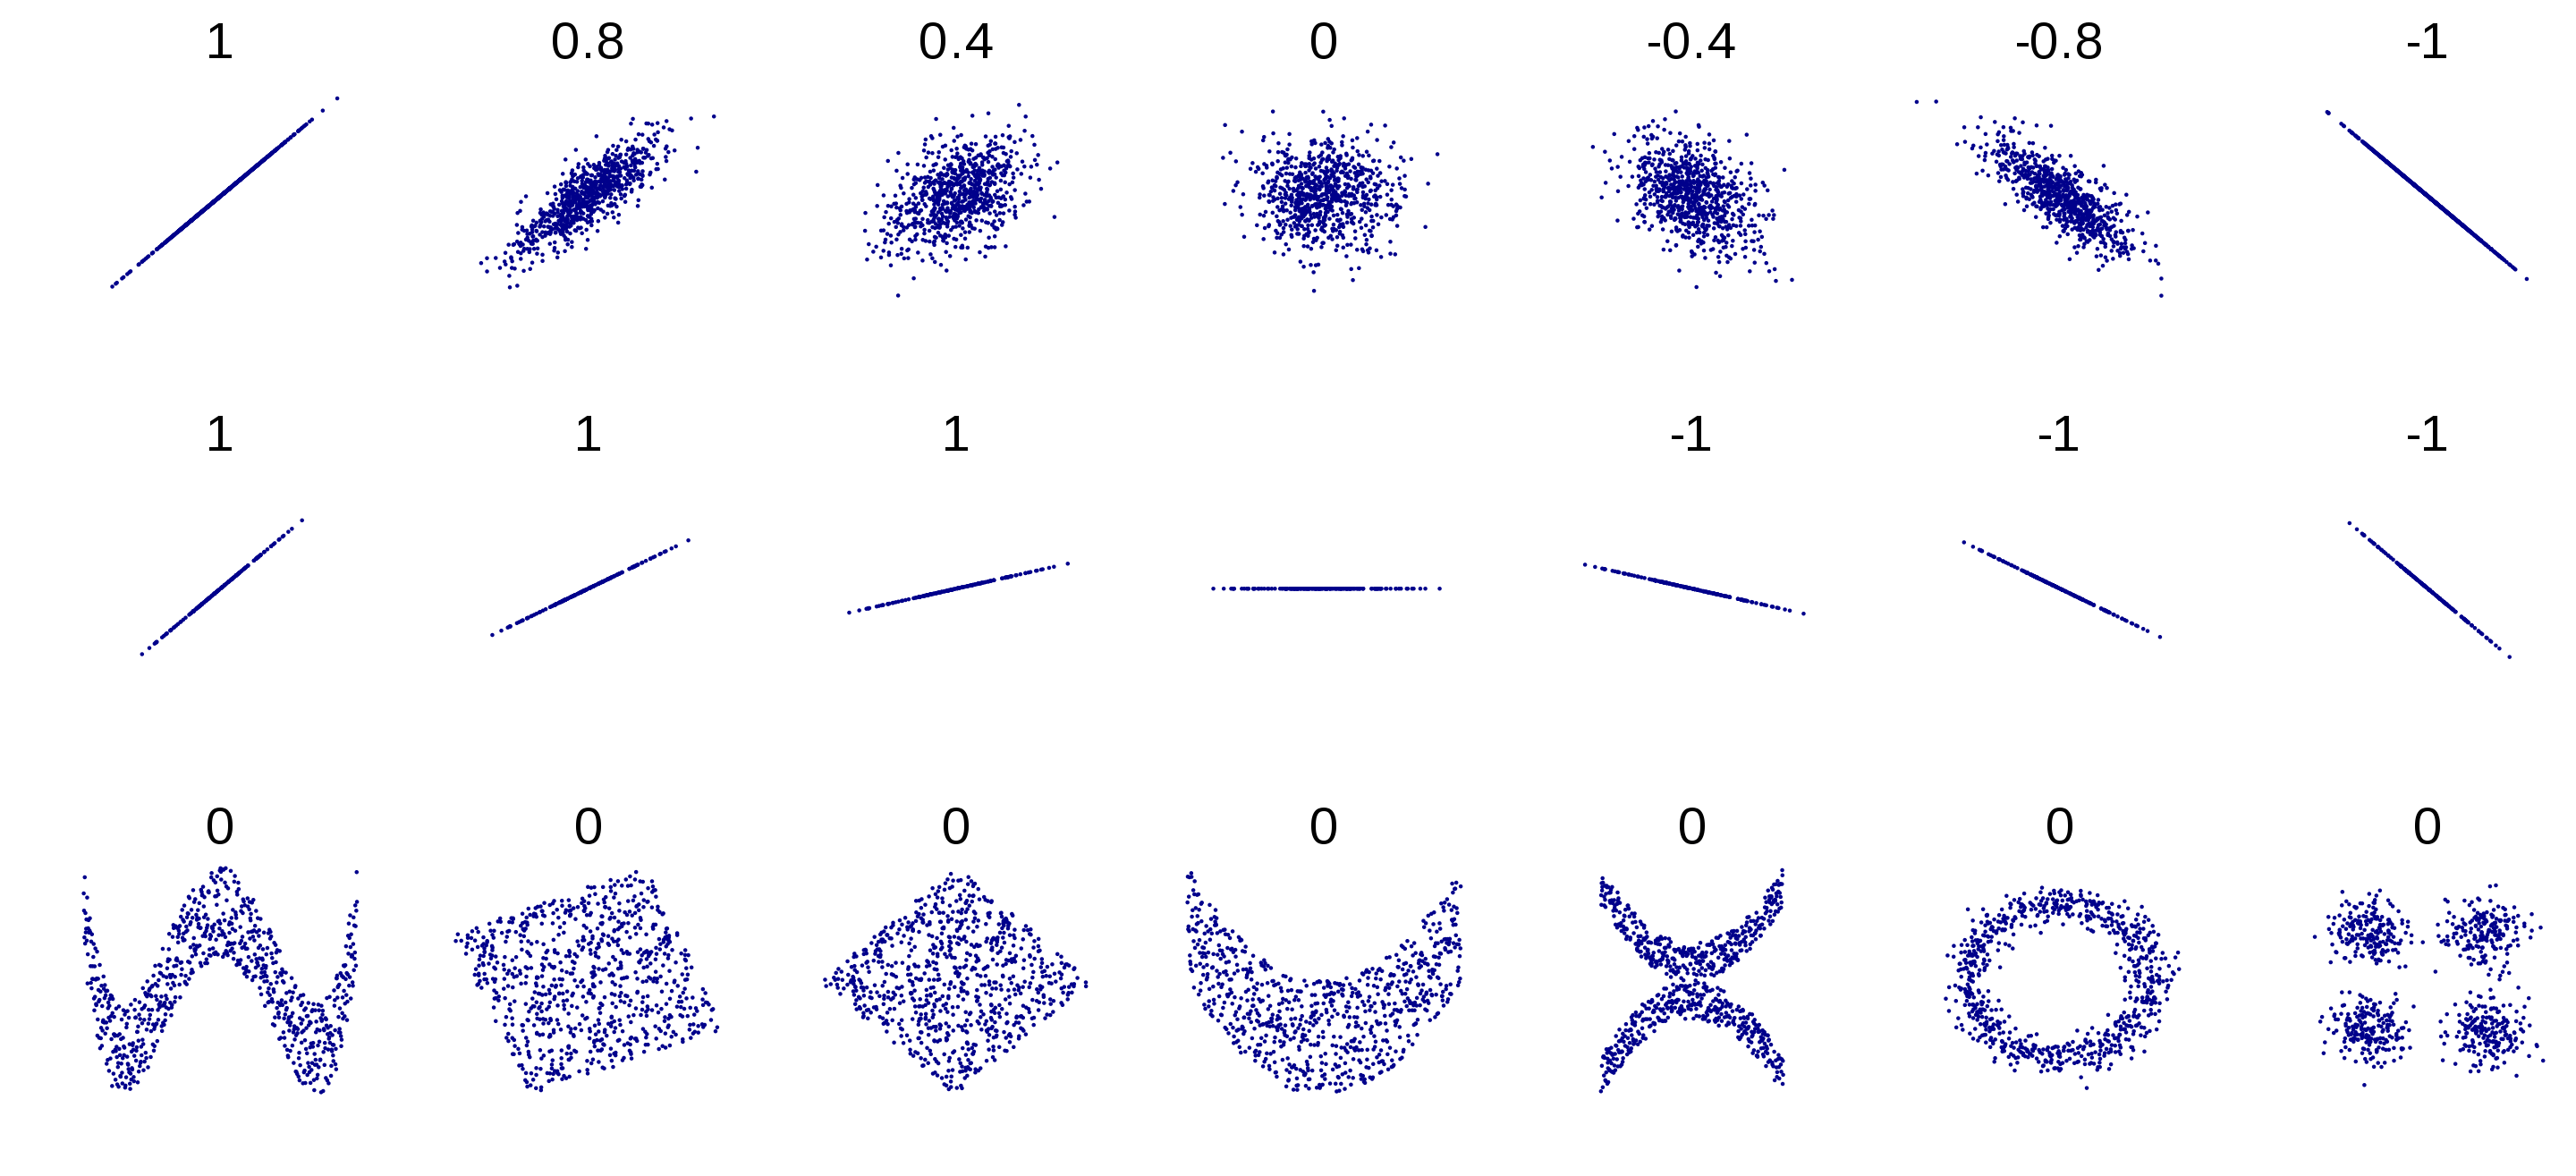 Exemples de nuages de points et leurs coefficients de corrélation de Pearson associés, issu de https://commons.wikimedia.org/w/index.php?curid=15165296.